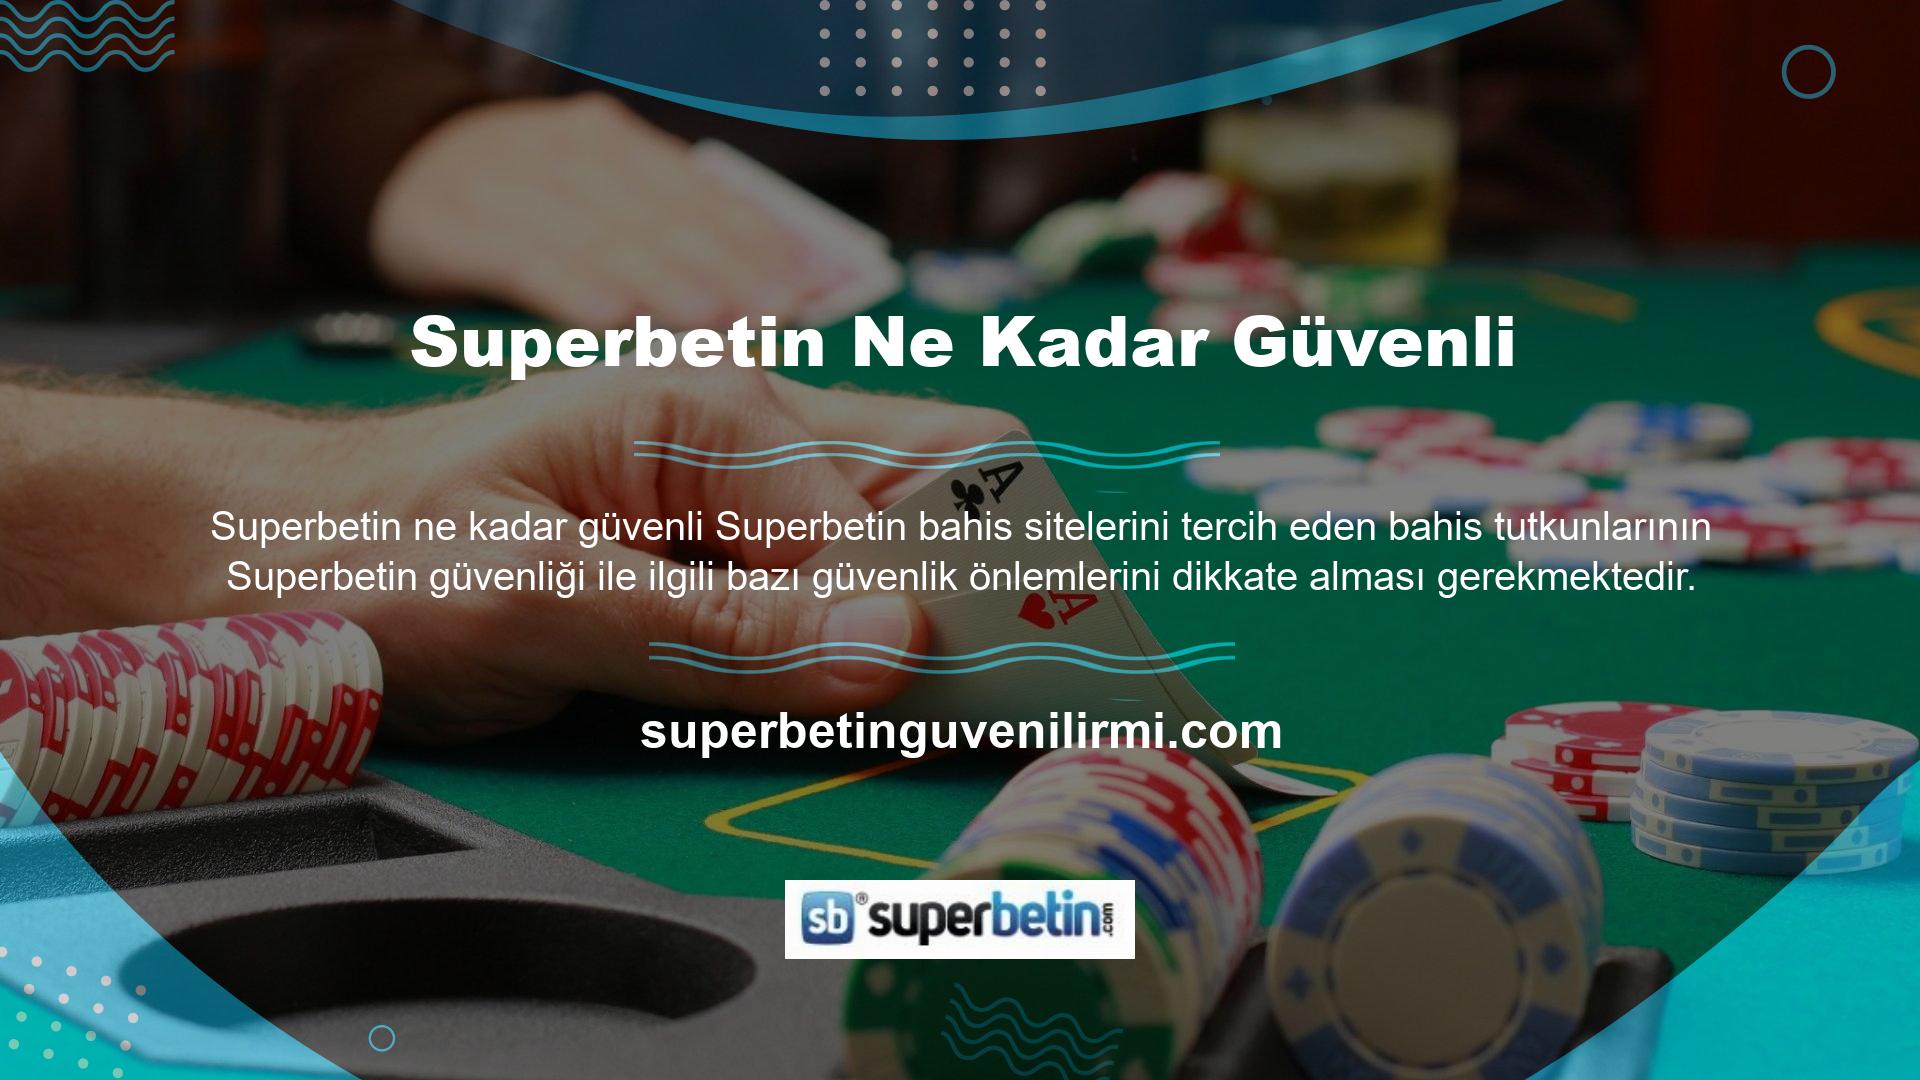 Superbetin, kullanıcıların kişisel bilgilerini koruyarak casino sektöründe bir ilke imza atıyor